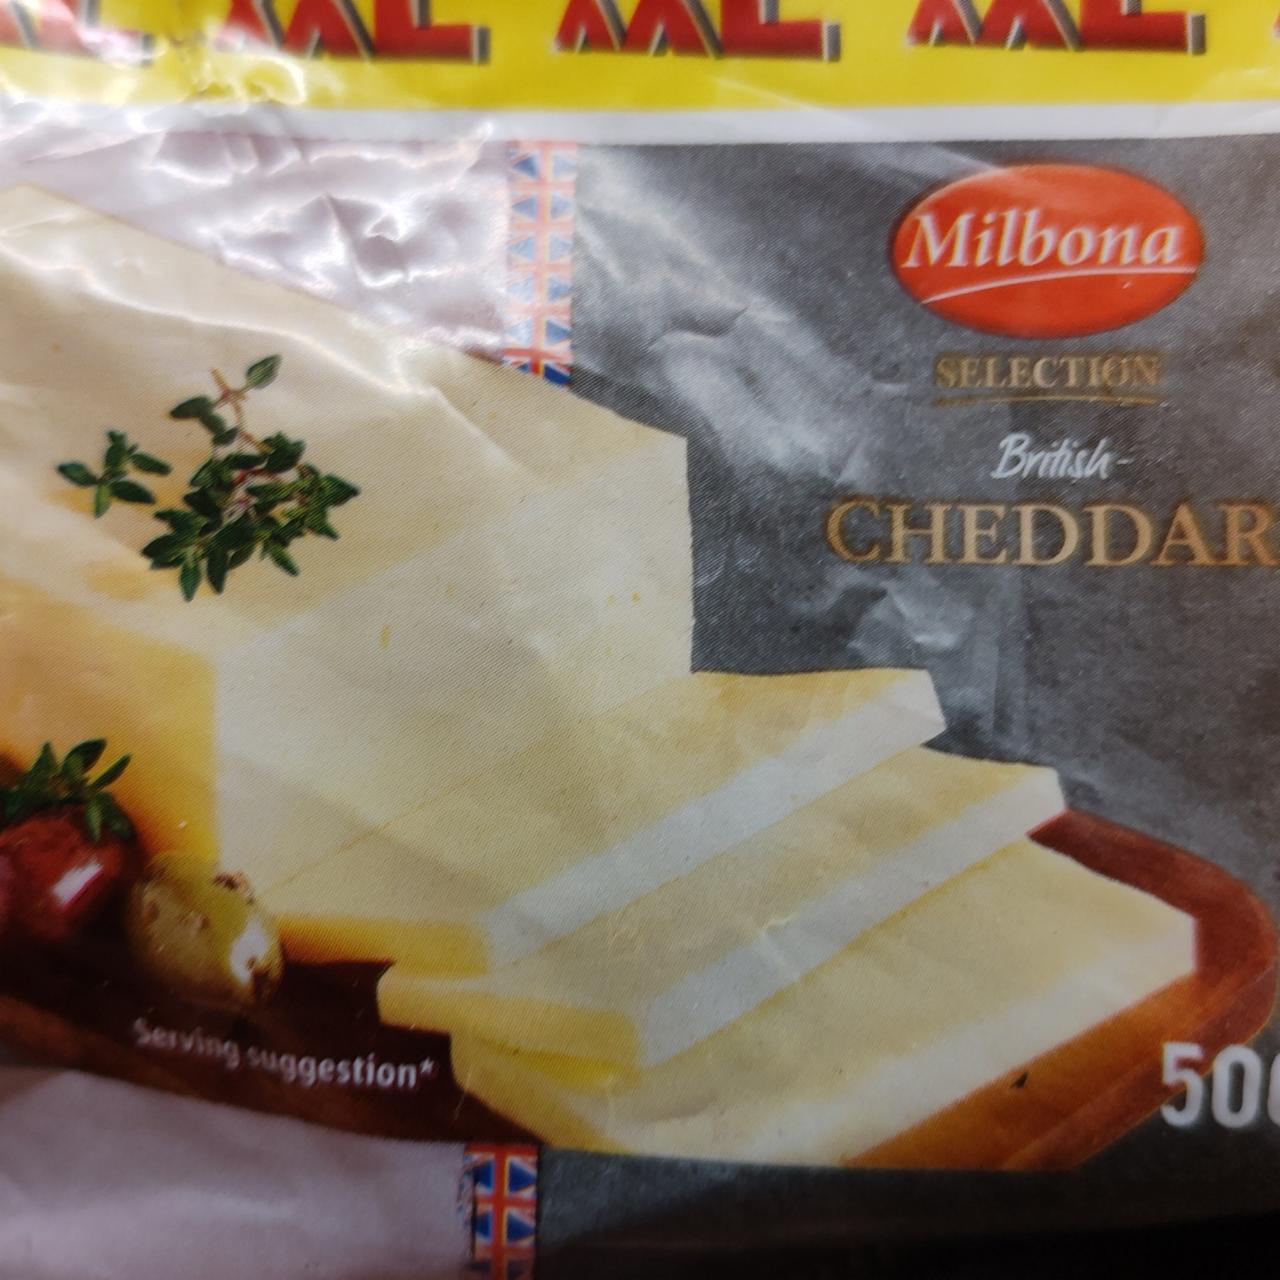 British Cheddar Selection Milbona a kalorie, nutriční kJ hodnoty 